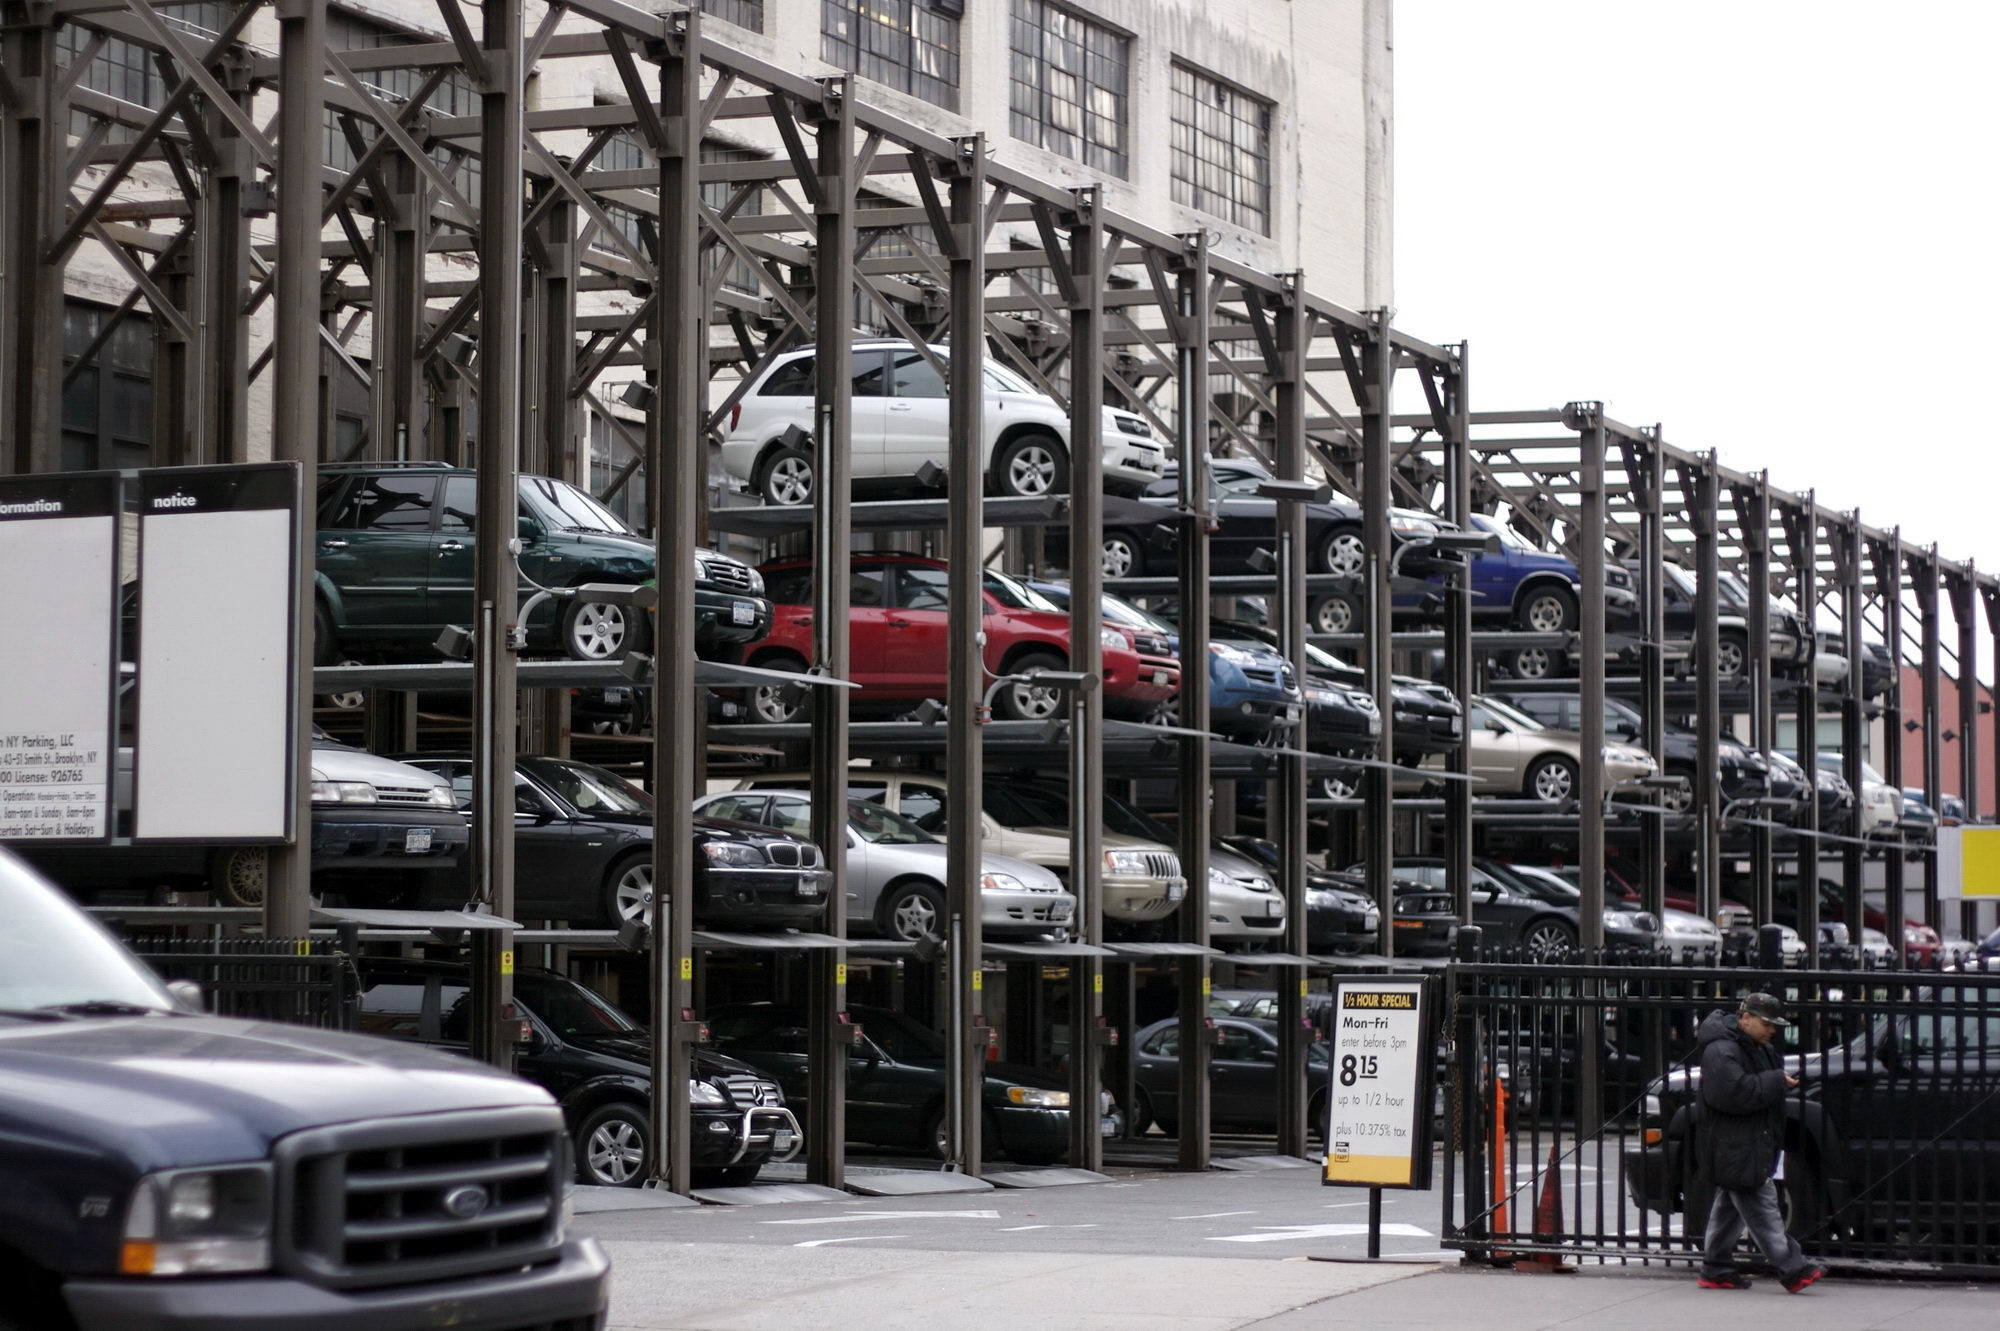 17 car parking. Многоярусные парковки для автомобилей. Многоярусная стоянка автомобилей. Многоуровневая парковка для машин. Многоярусная парковка.